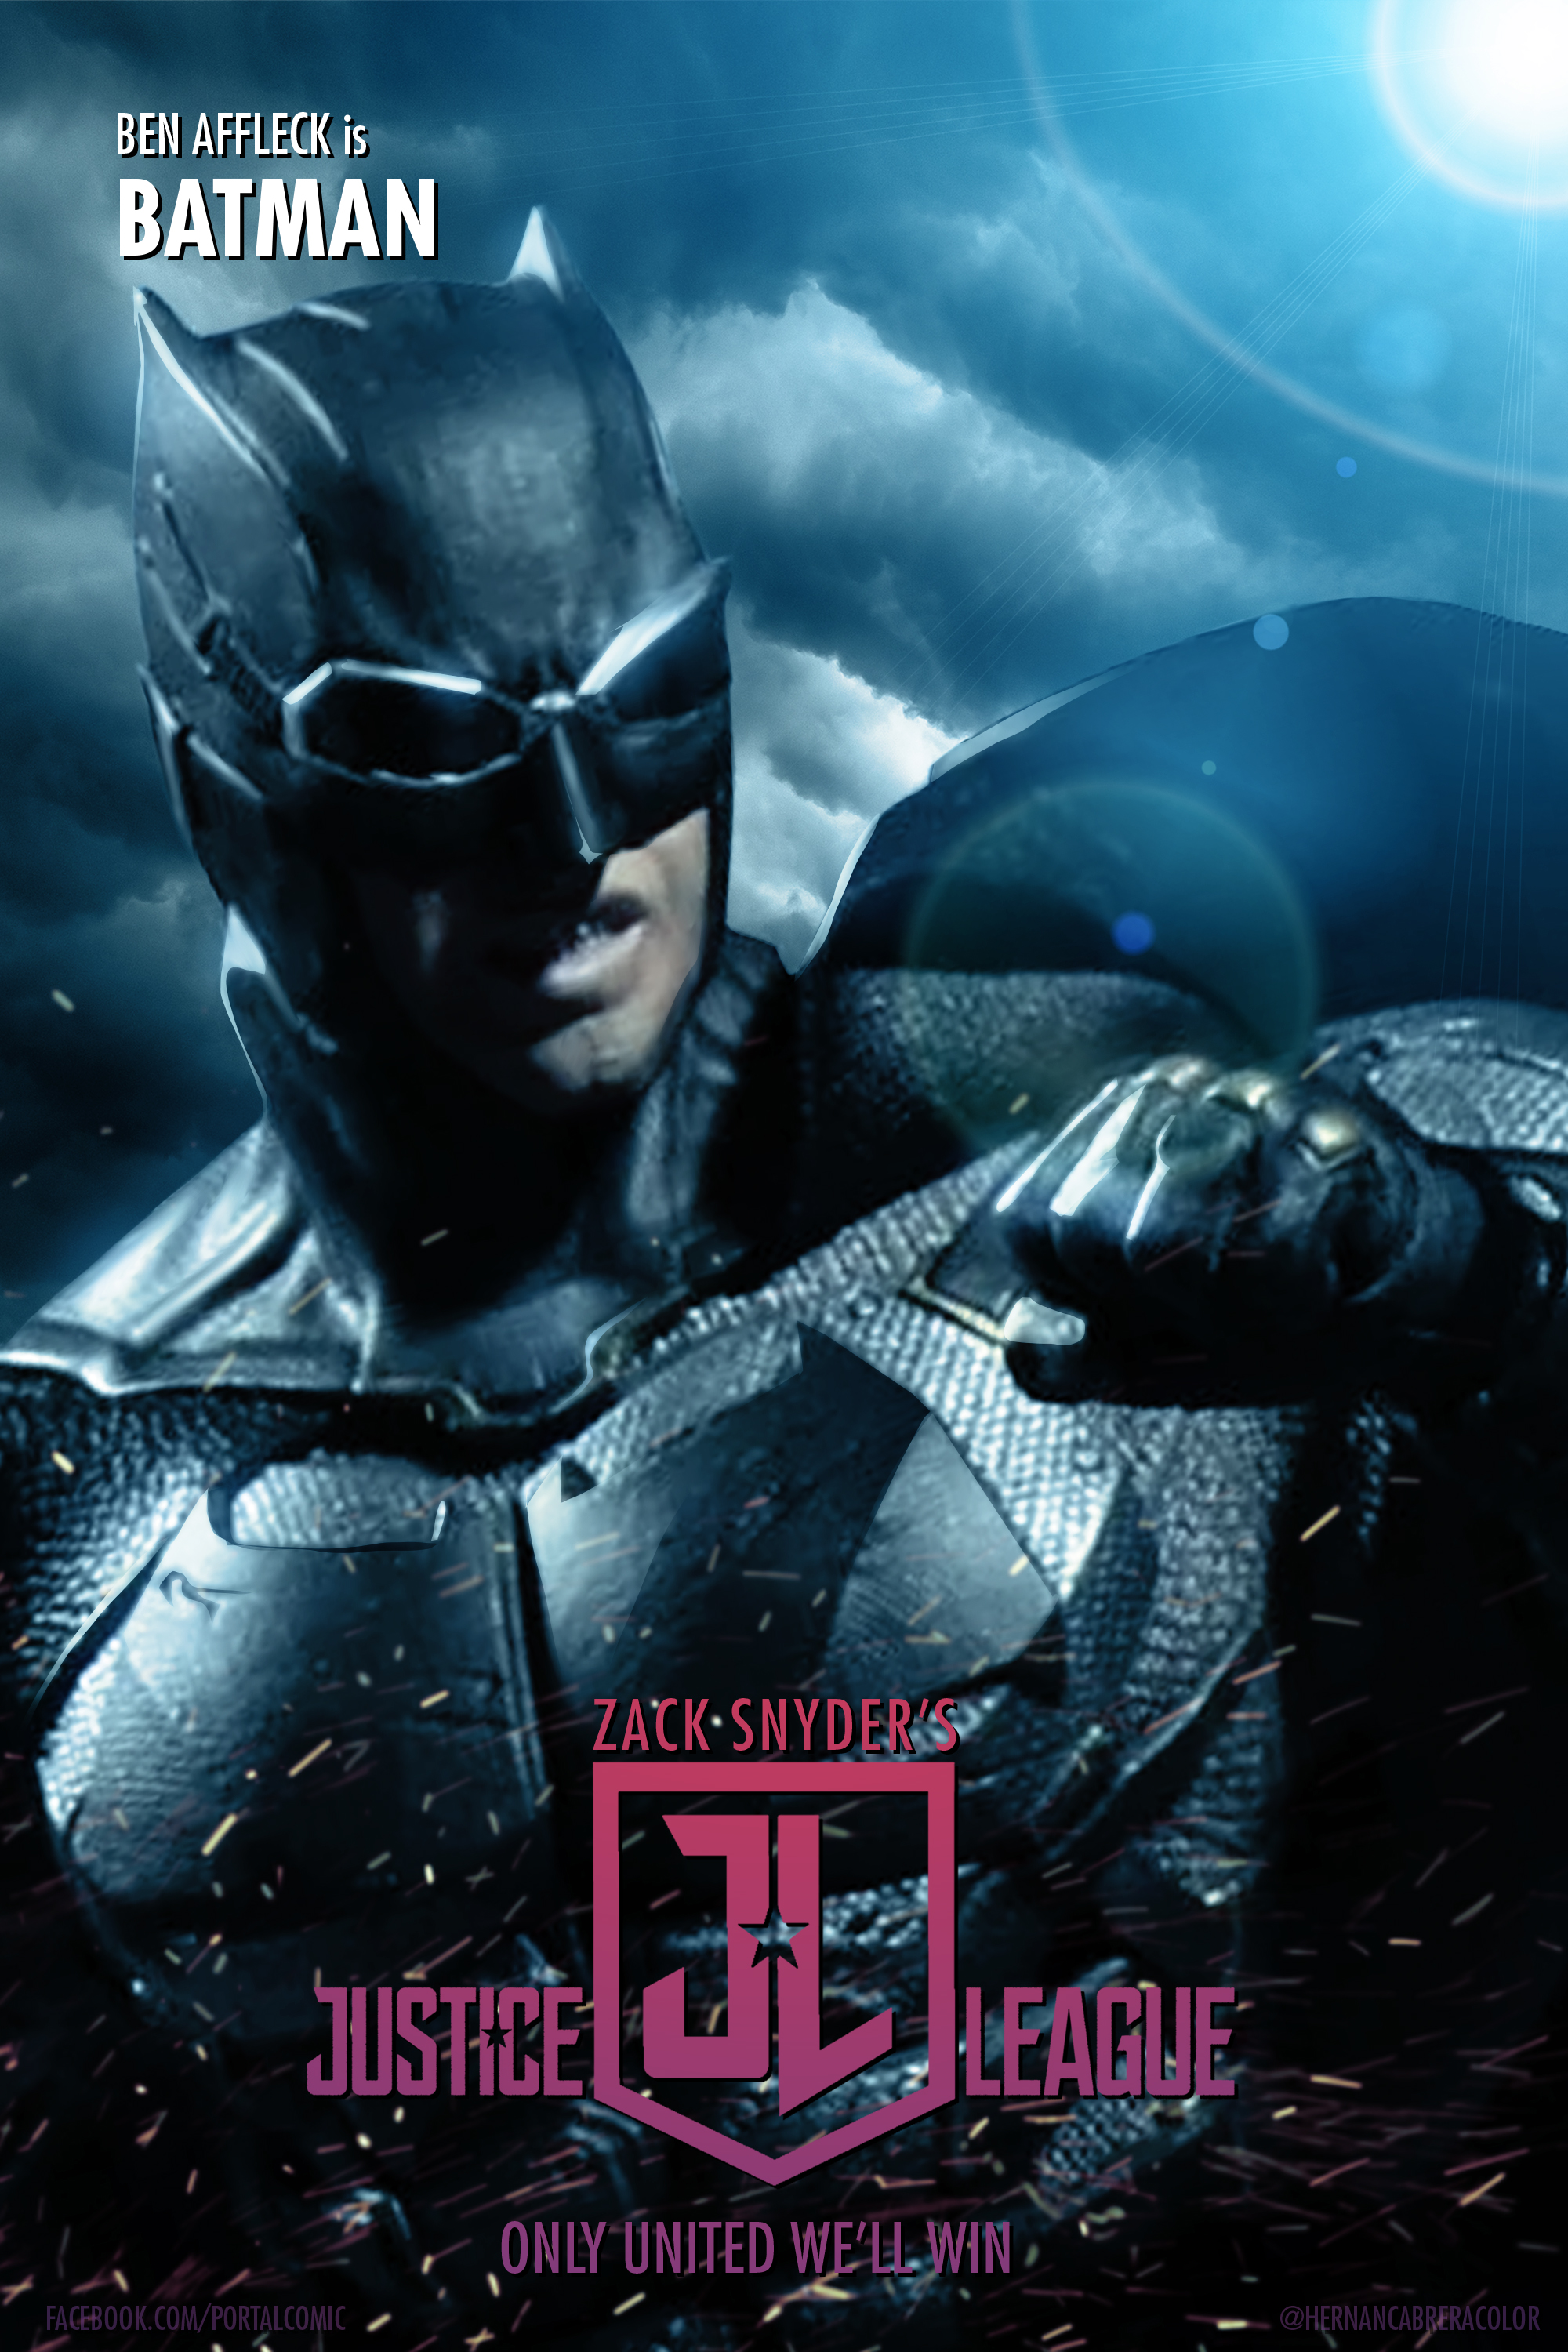 Zack Snyder's Justice League Fan Poster - BATMAN by HernanCabrera on  DeviantArt